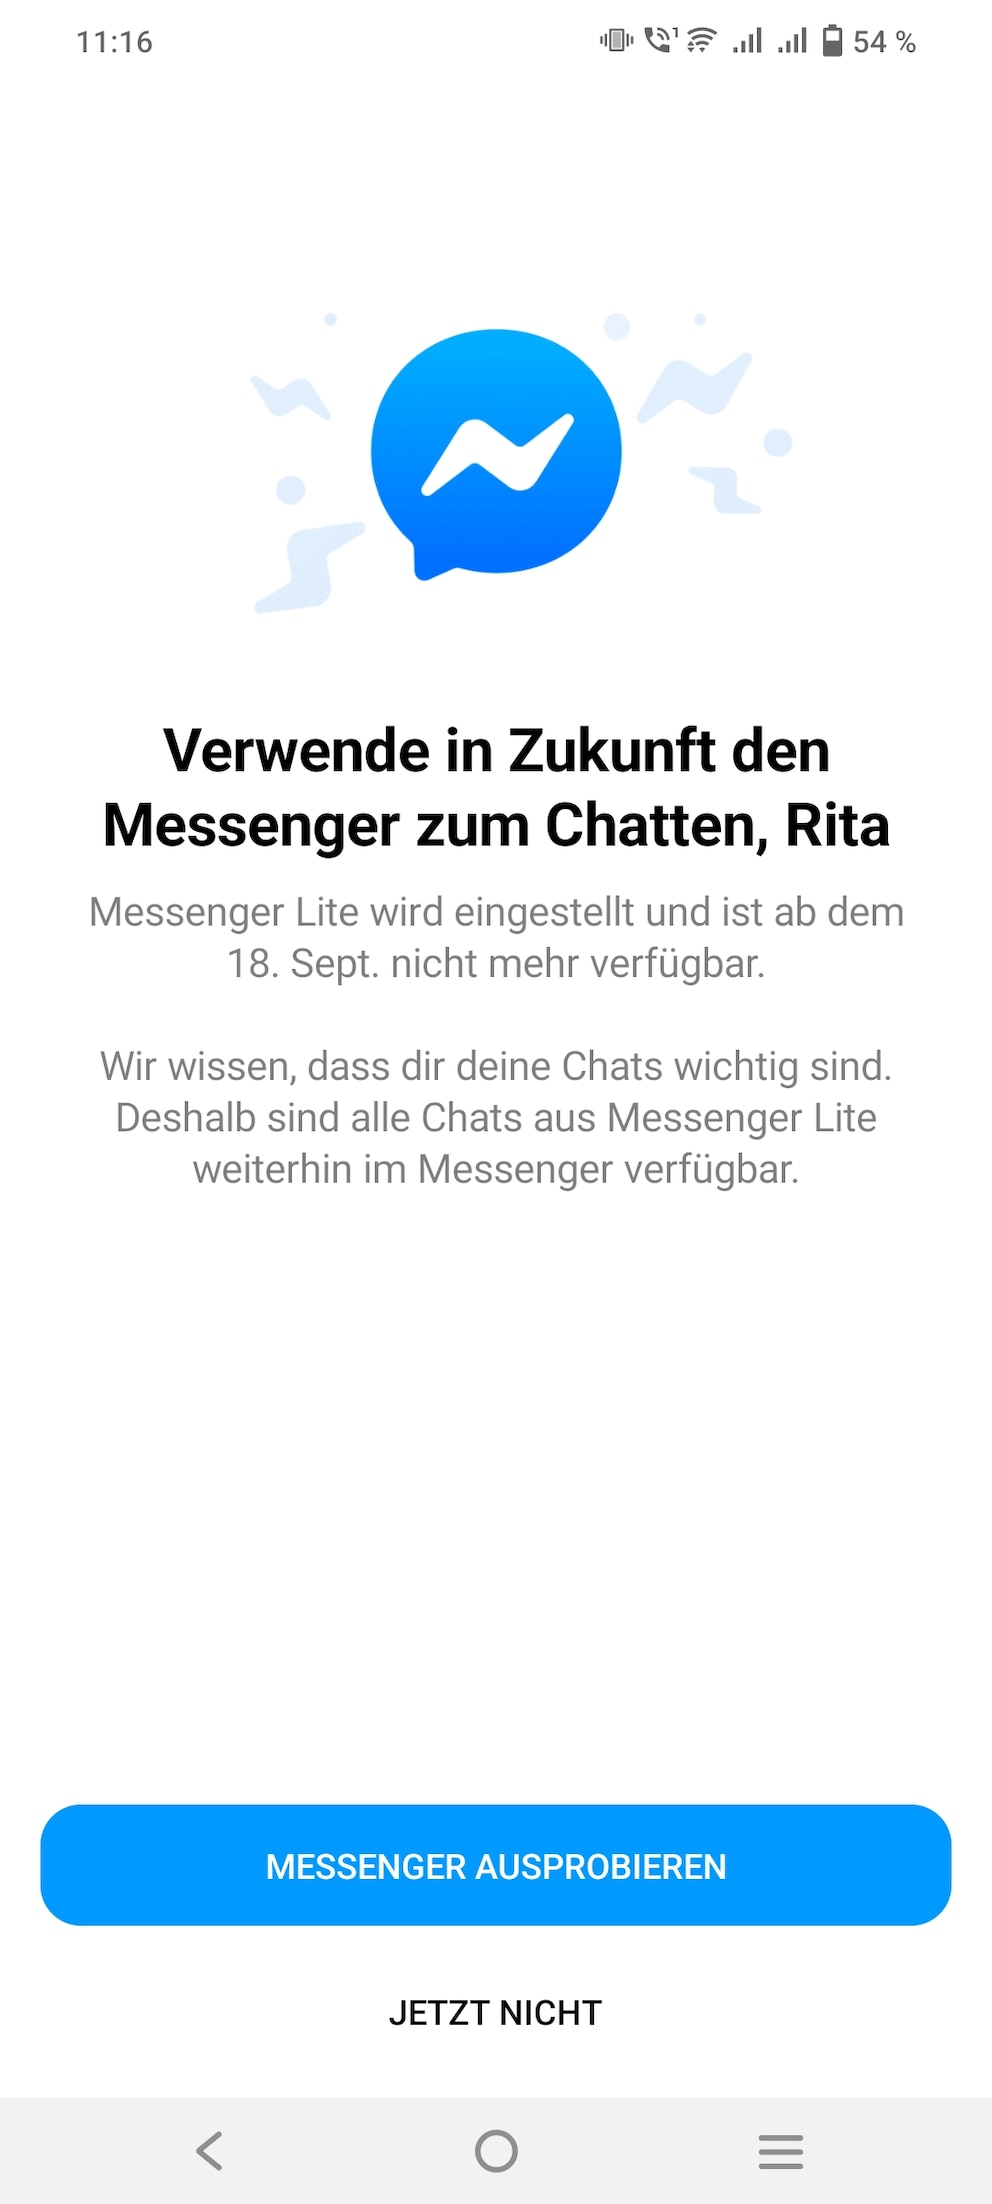 Der Messenger Lite wird zum 18. September 2023 eingestellt